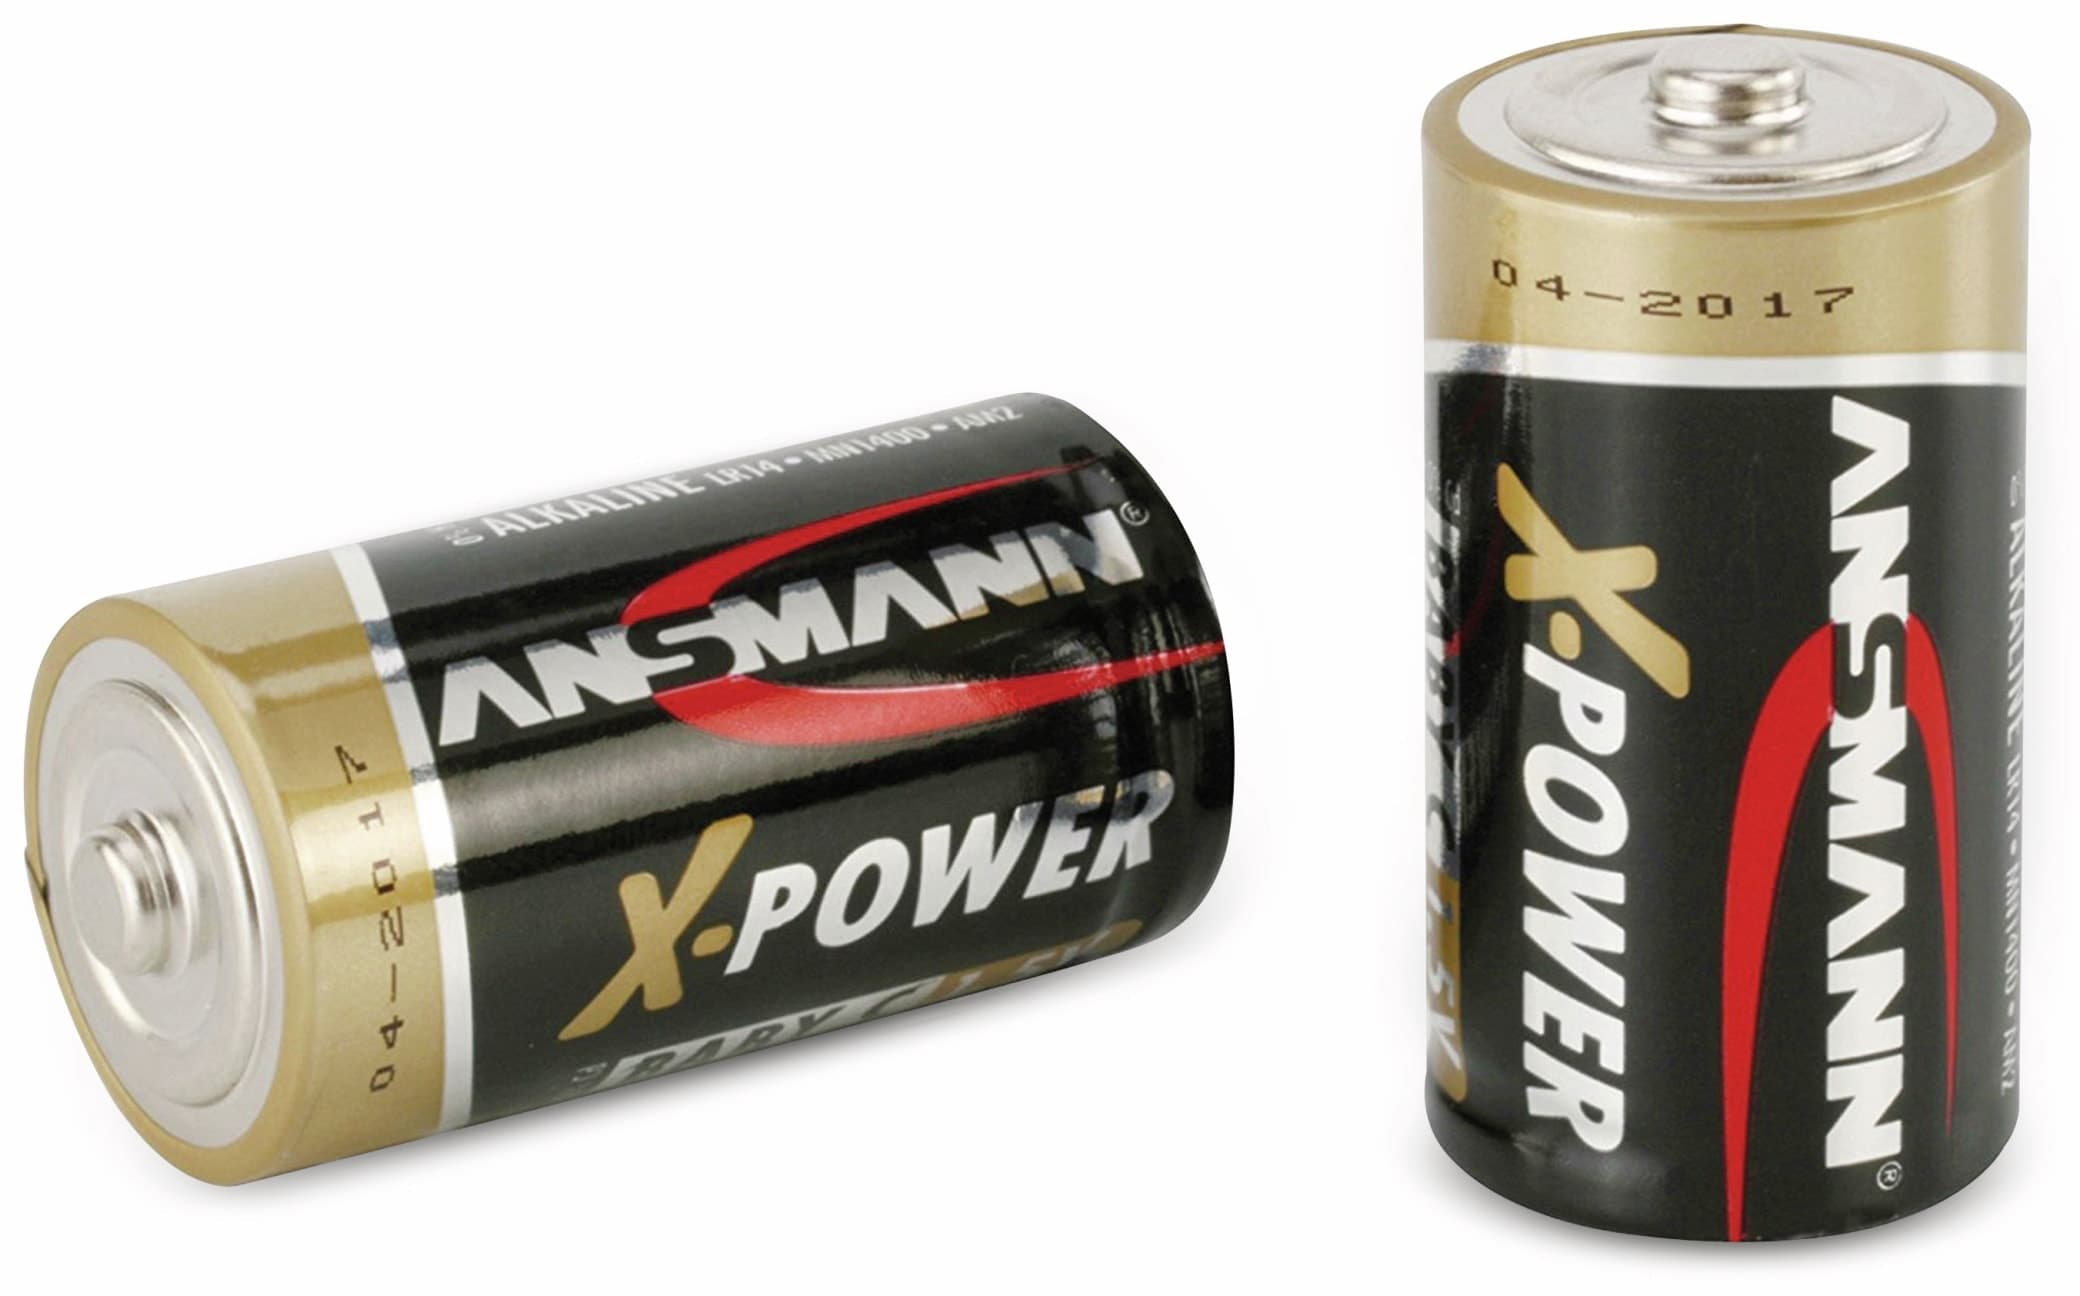 ANSMANN Baby-Batterie, XPower, 7500mAh, 2 Stück